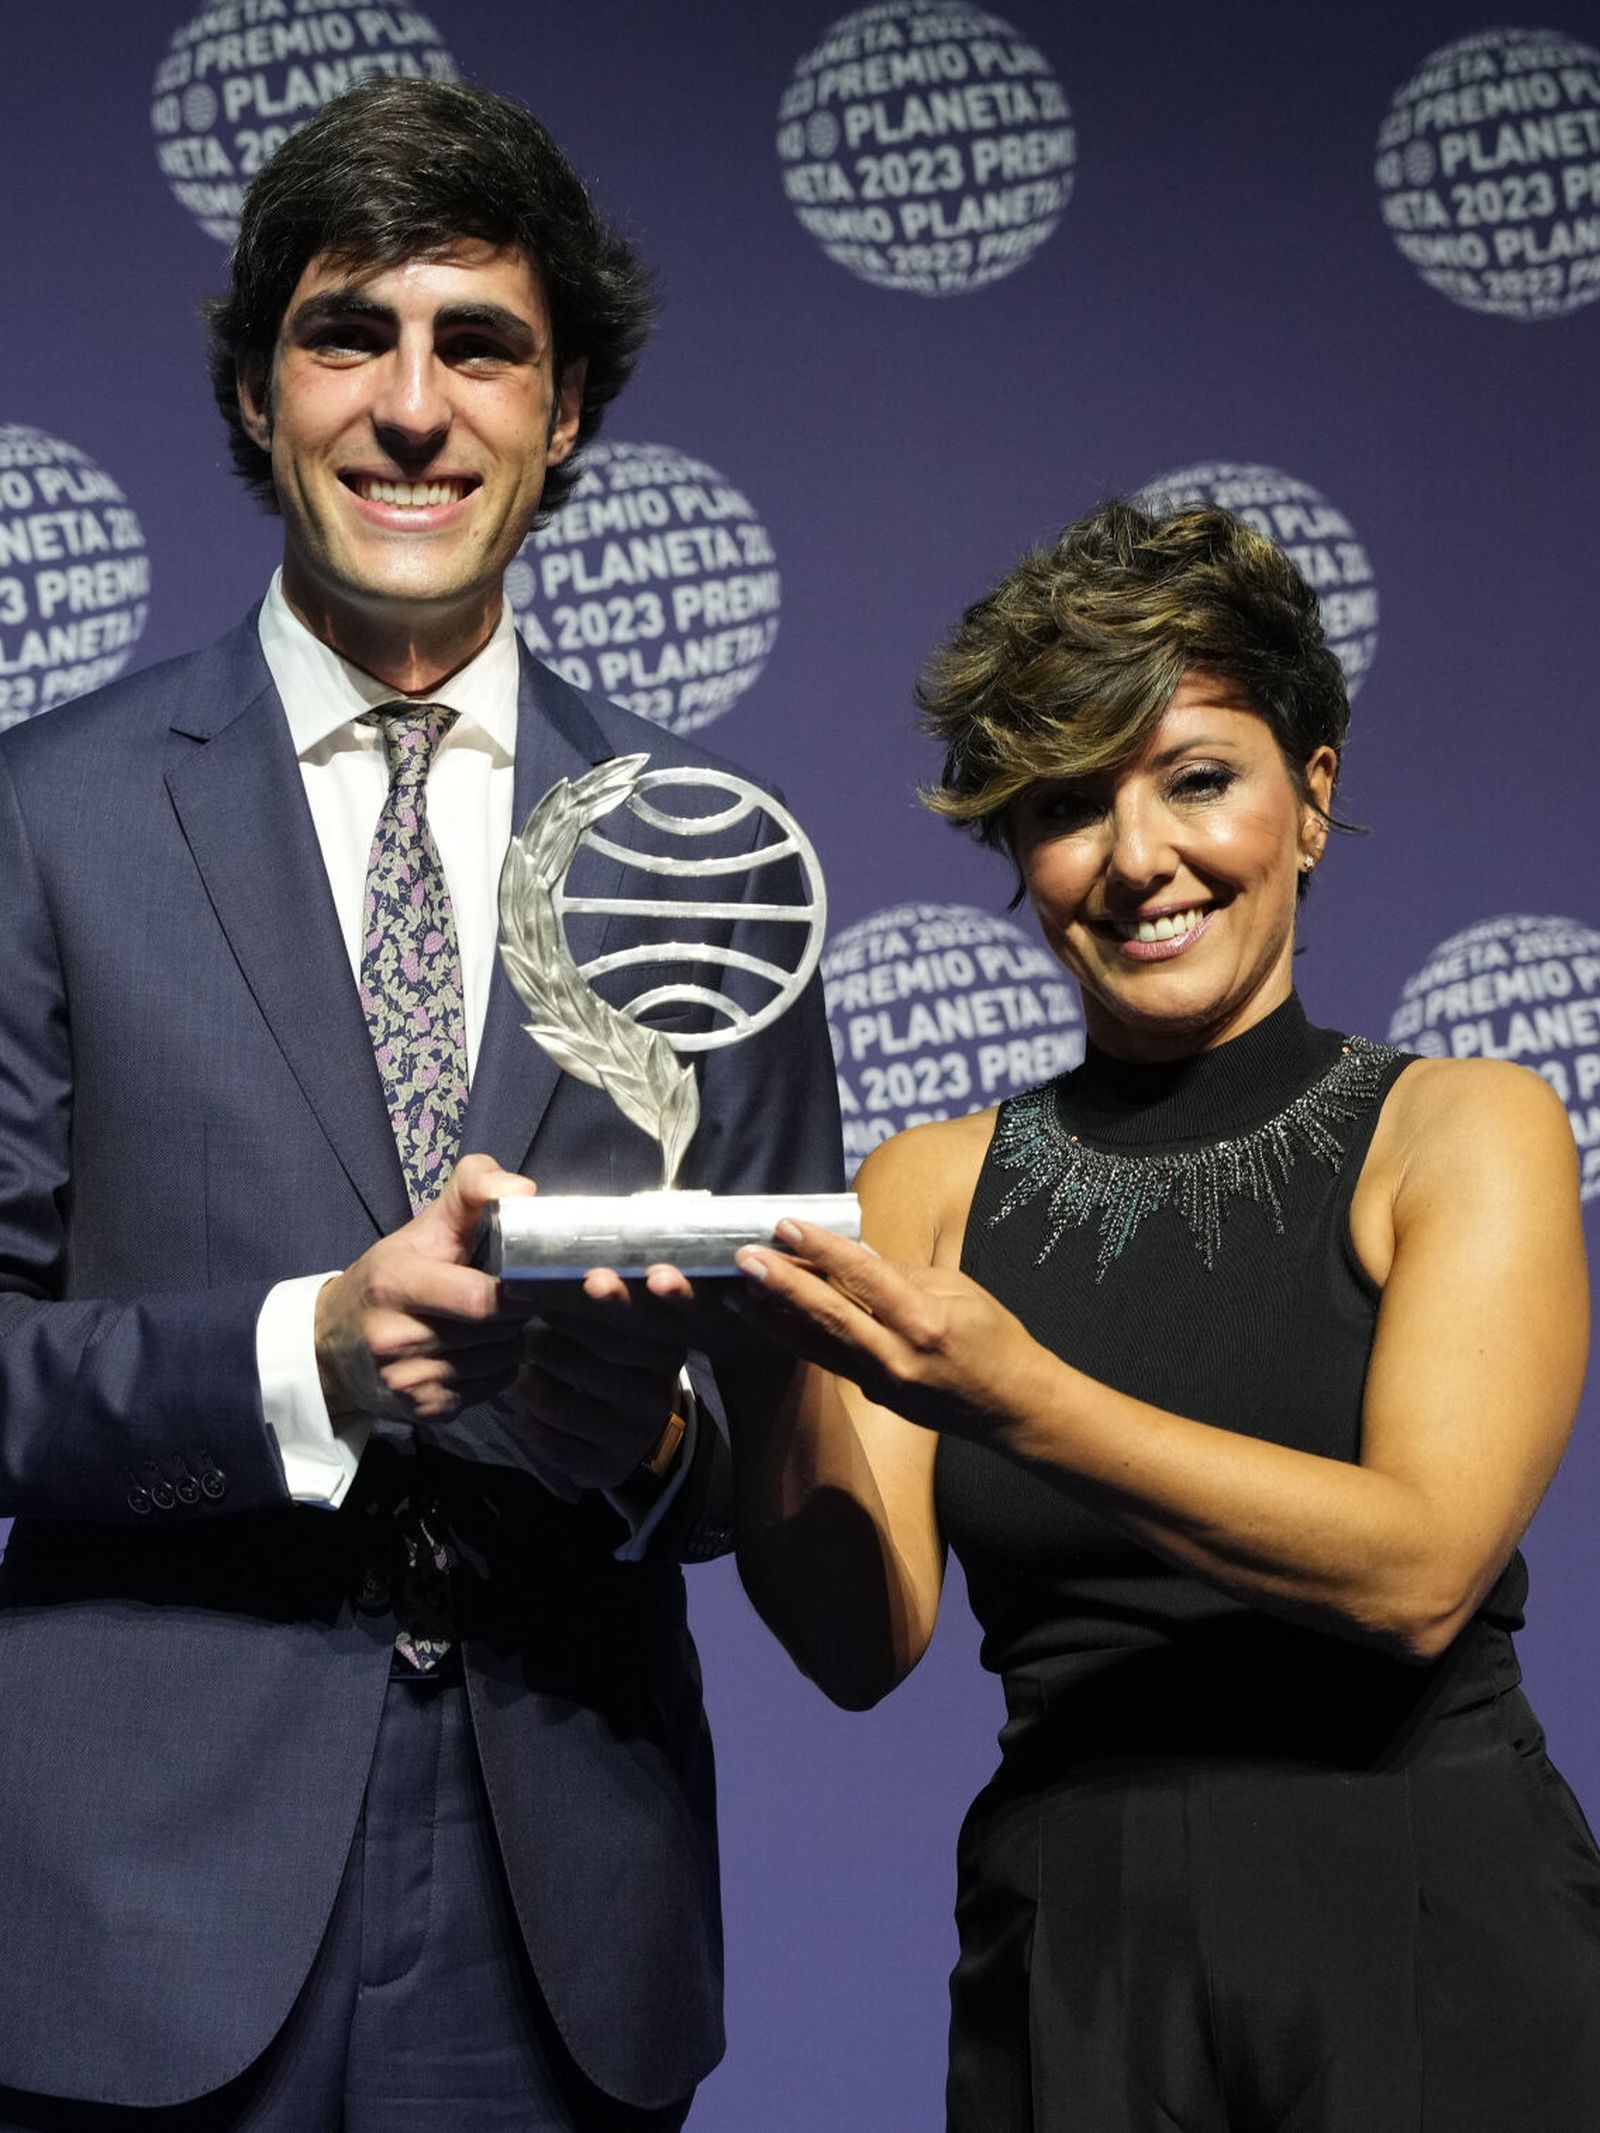 La periodista y escritora Sonsoles Ónega posa con el finalista Alfonso Goizueta tras ganar esta noche el 72º Premio Planeta. (EFE/Alejandro García)